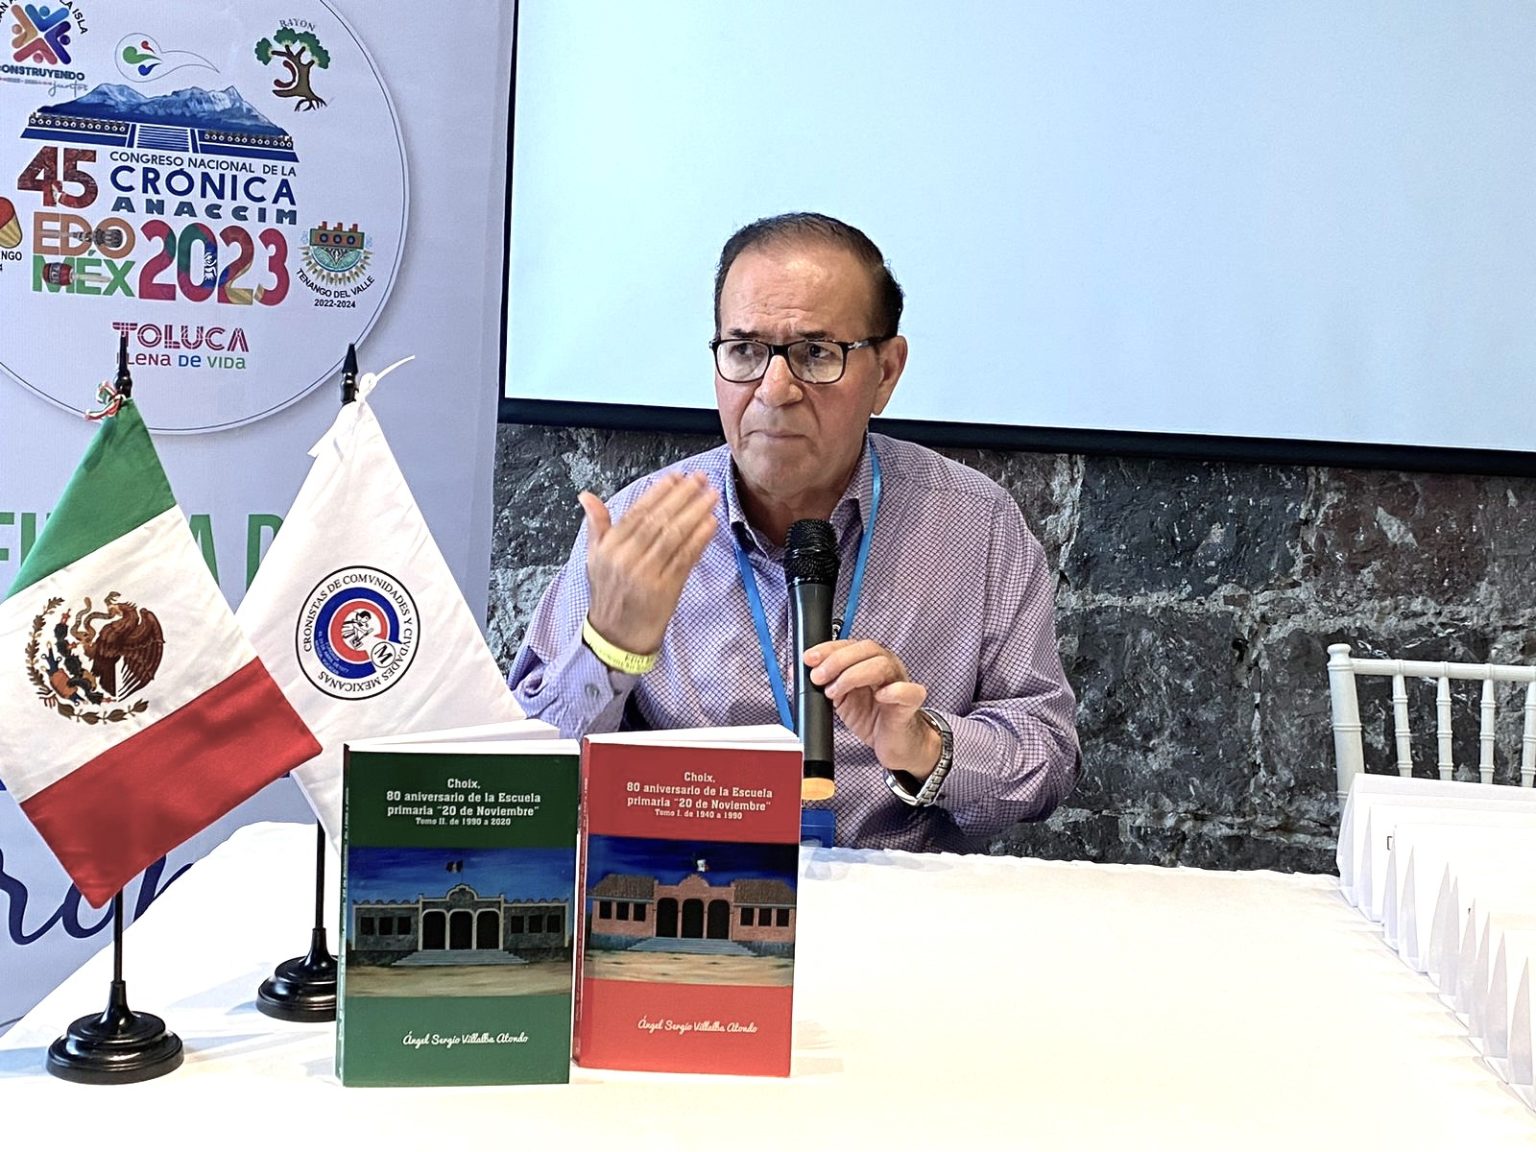 Ángel S. Villalba Atondo Cronista de Choix recibe la Presea Daniel Vargas Rivera 2023